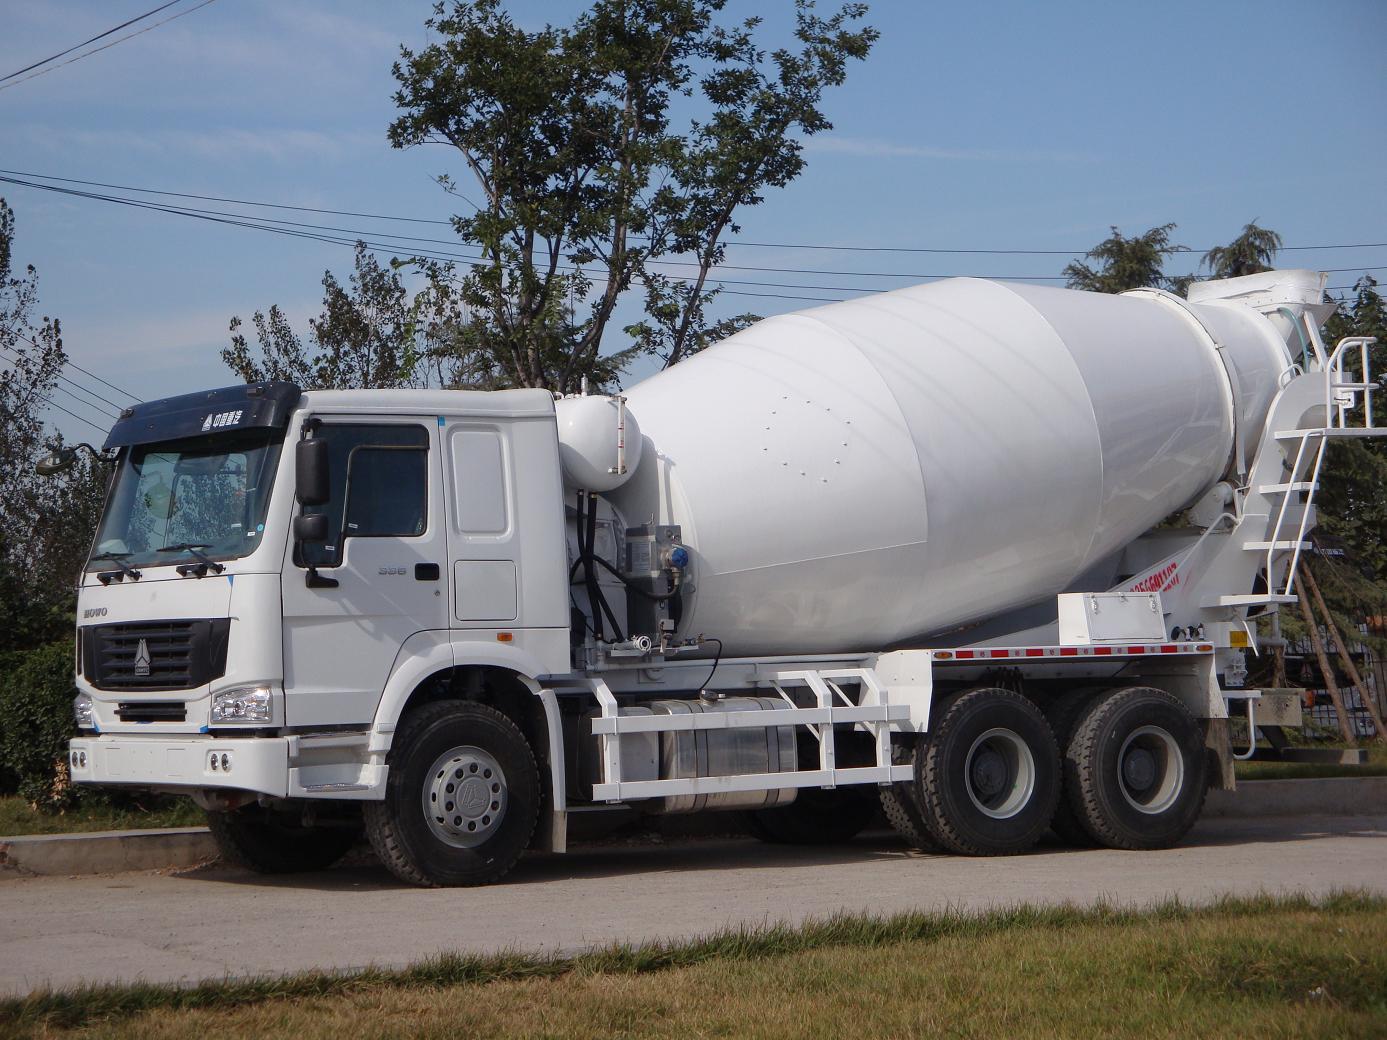 HM12-D cement mixer truck